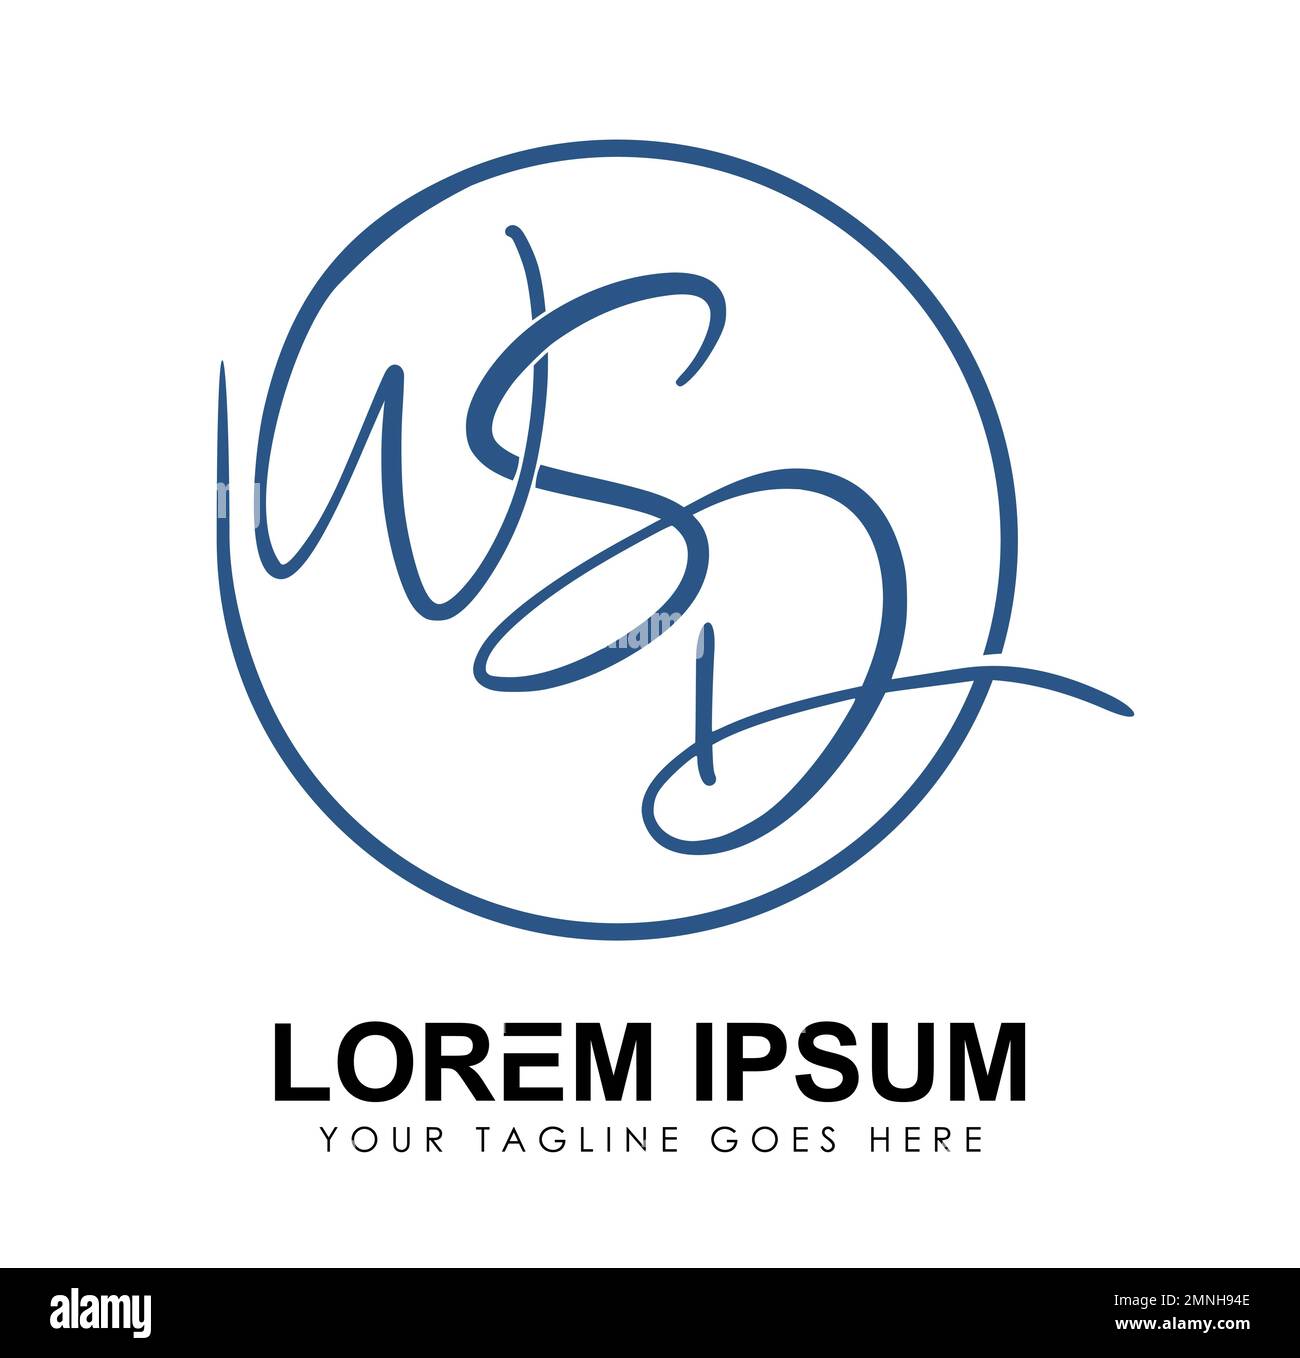 Logo Monogram vettore lettere iniziali WSD Firma illustrazione su sfondo bianco isolato Illustrazione Vettoriale